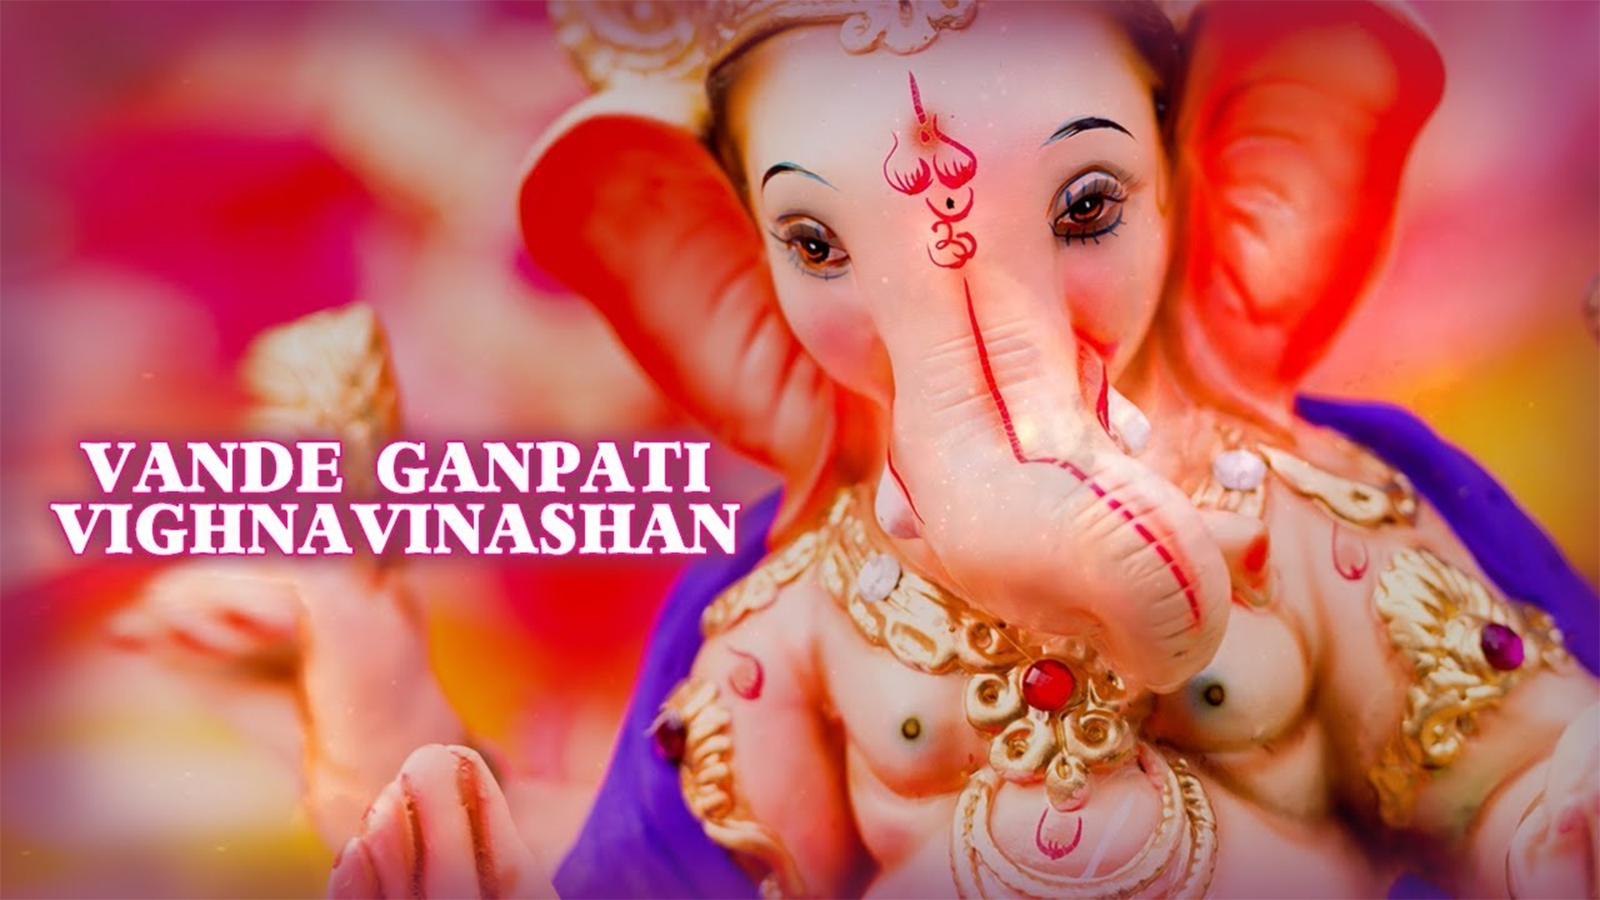 Ganesh Bhakti In Hindi 'Vande Ganpati Vighnaviashan' Sung By ...